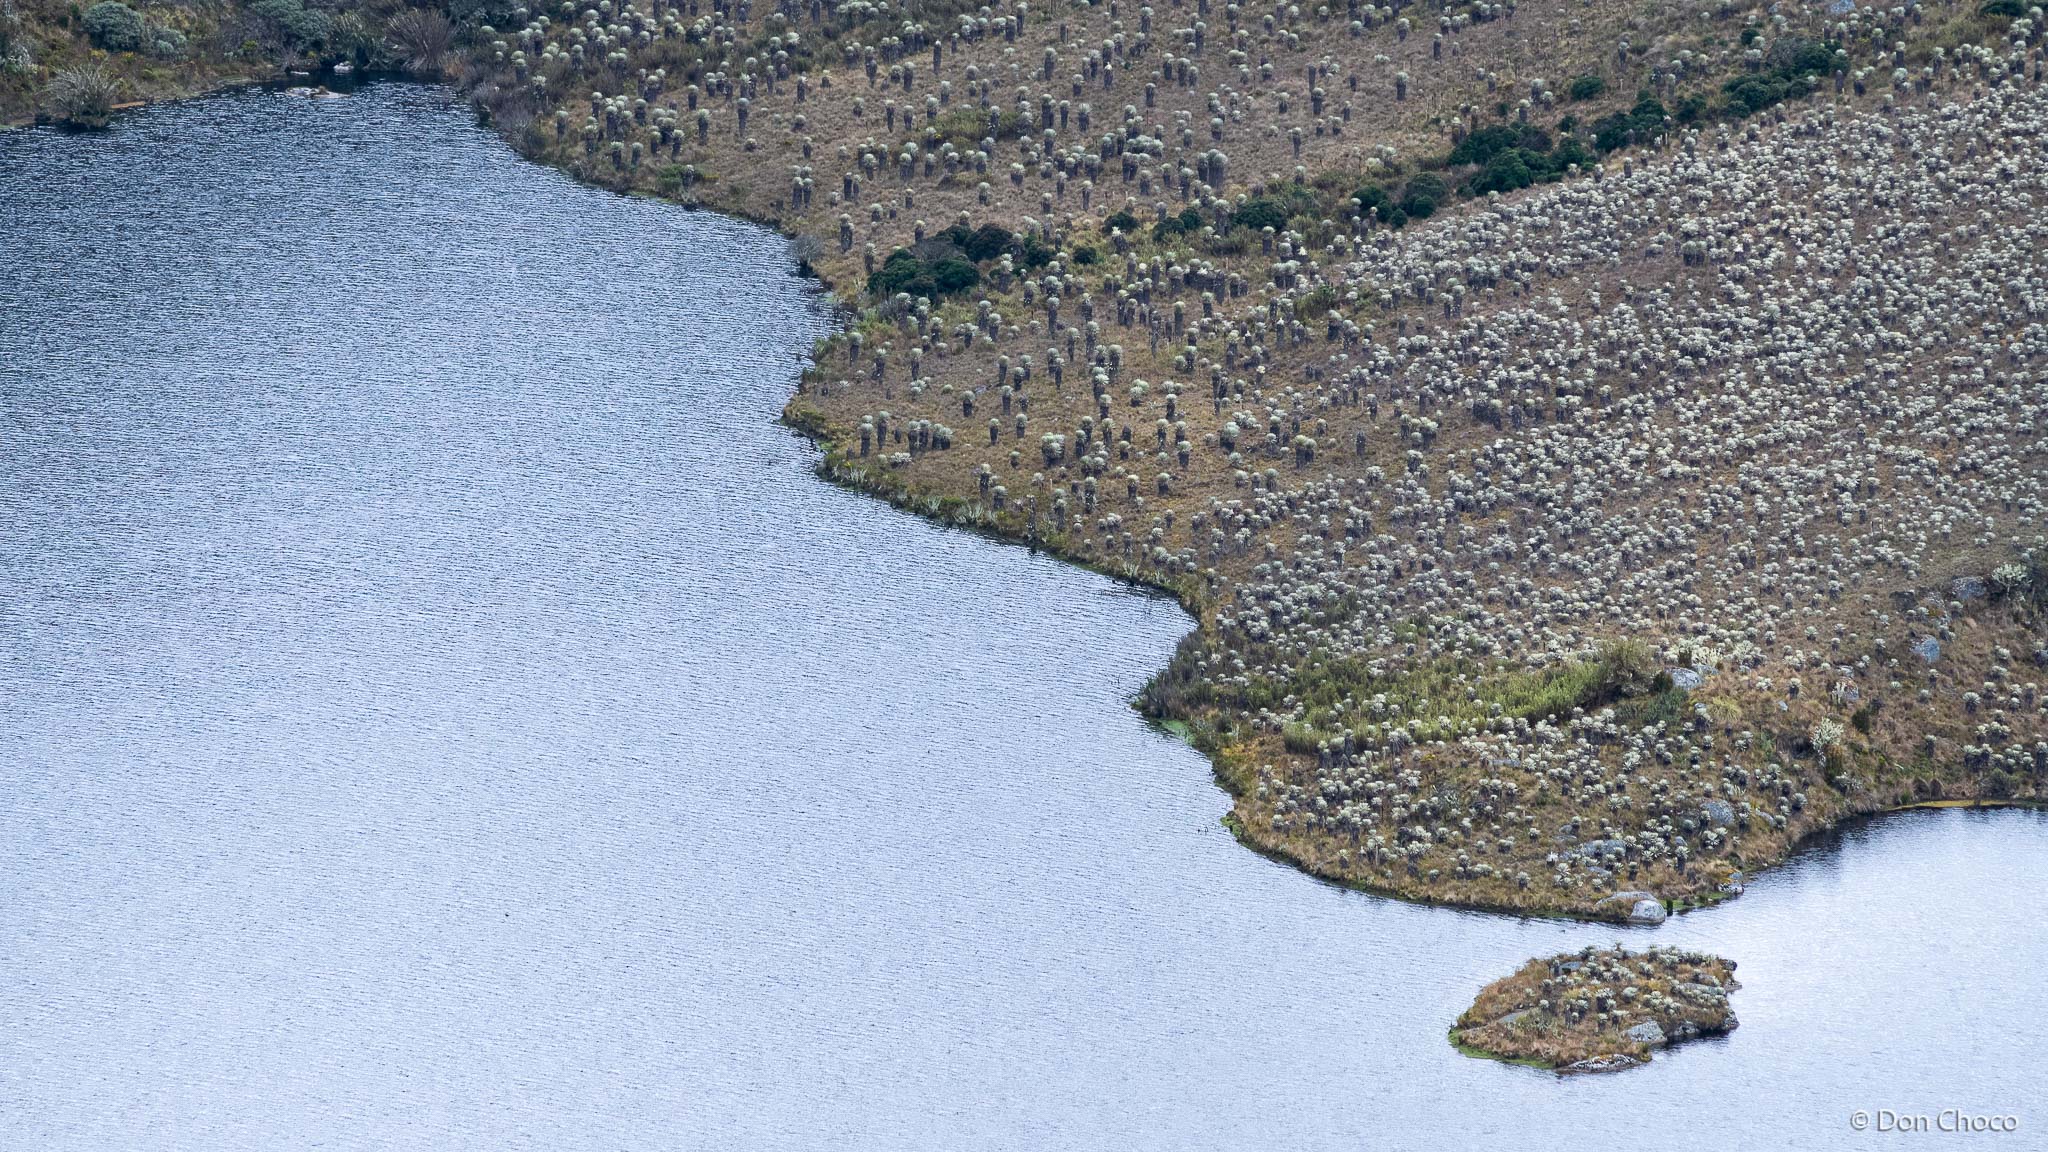 Fragmento de la Laguna Los Tunjos ubicada en el Páramo de Sumapaz a una altura de 3.780 msnm con una superficie de 0.75 km2